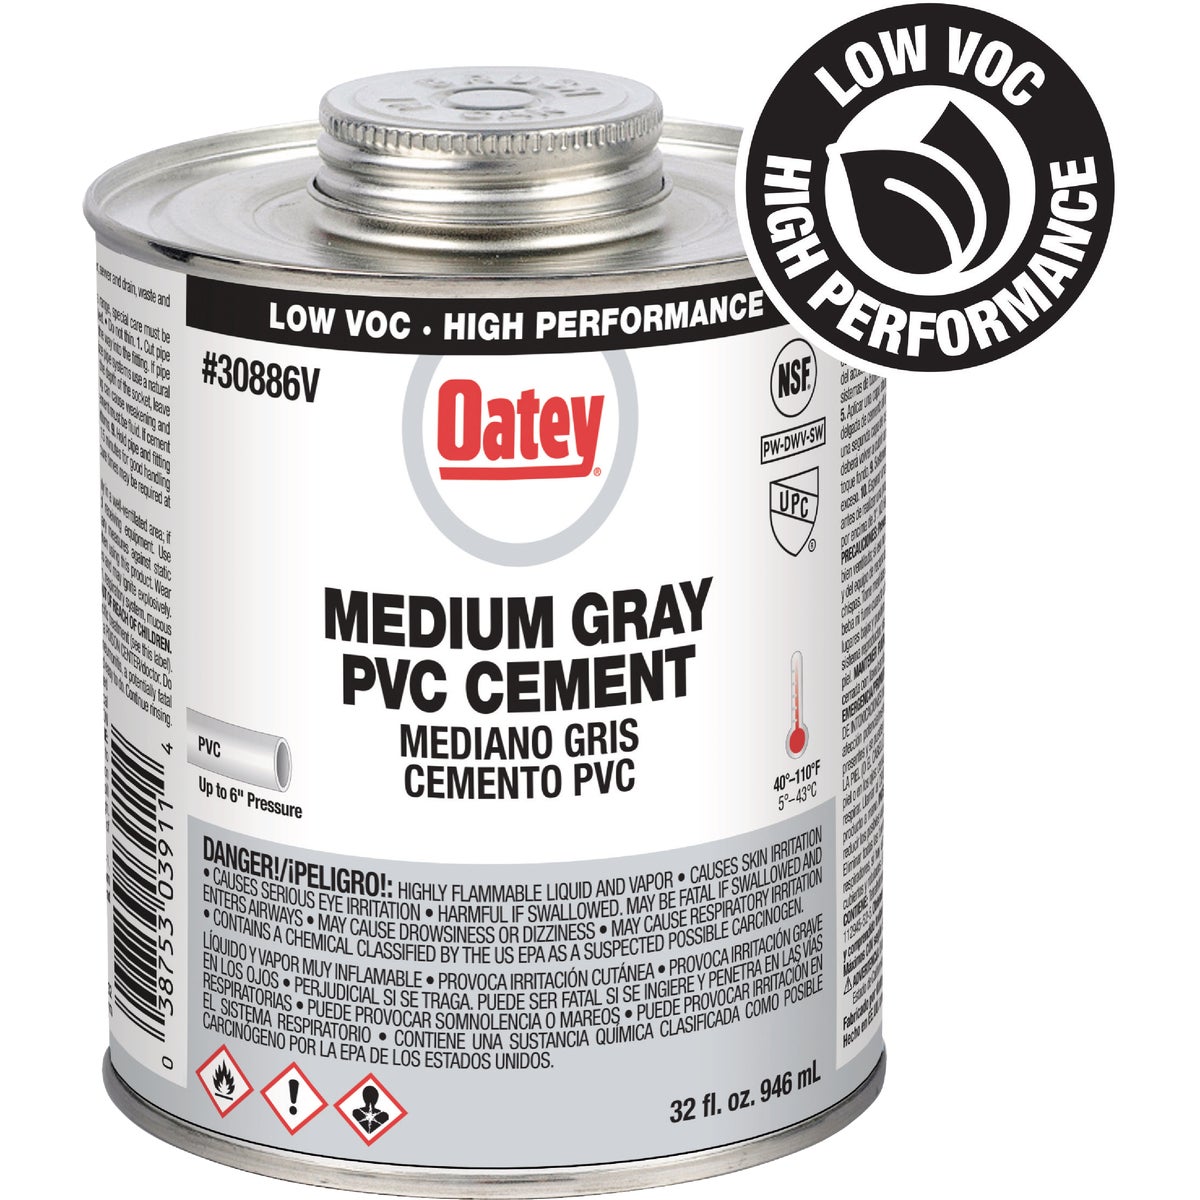 Oatey 32 Oz. Low Voc Gray PVC Cement